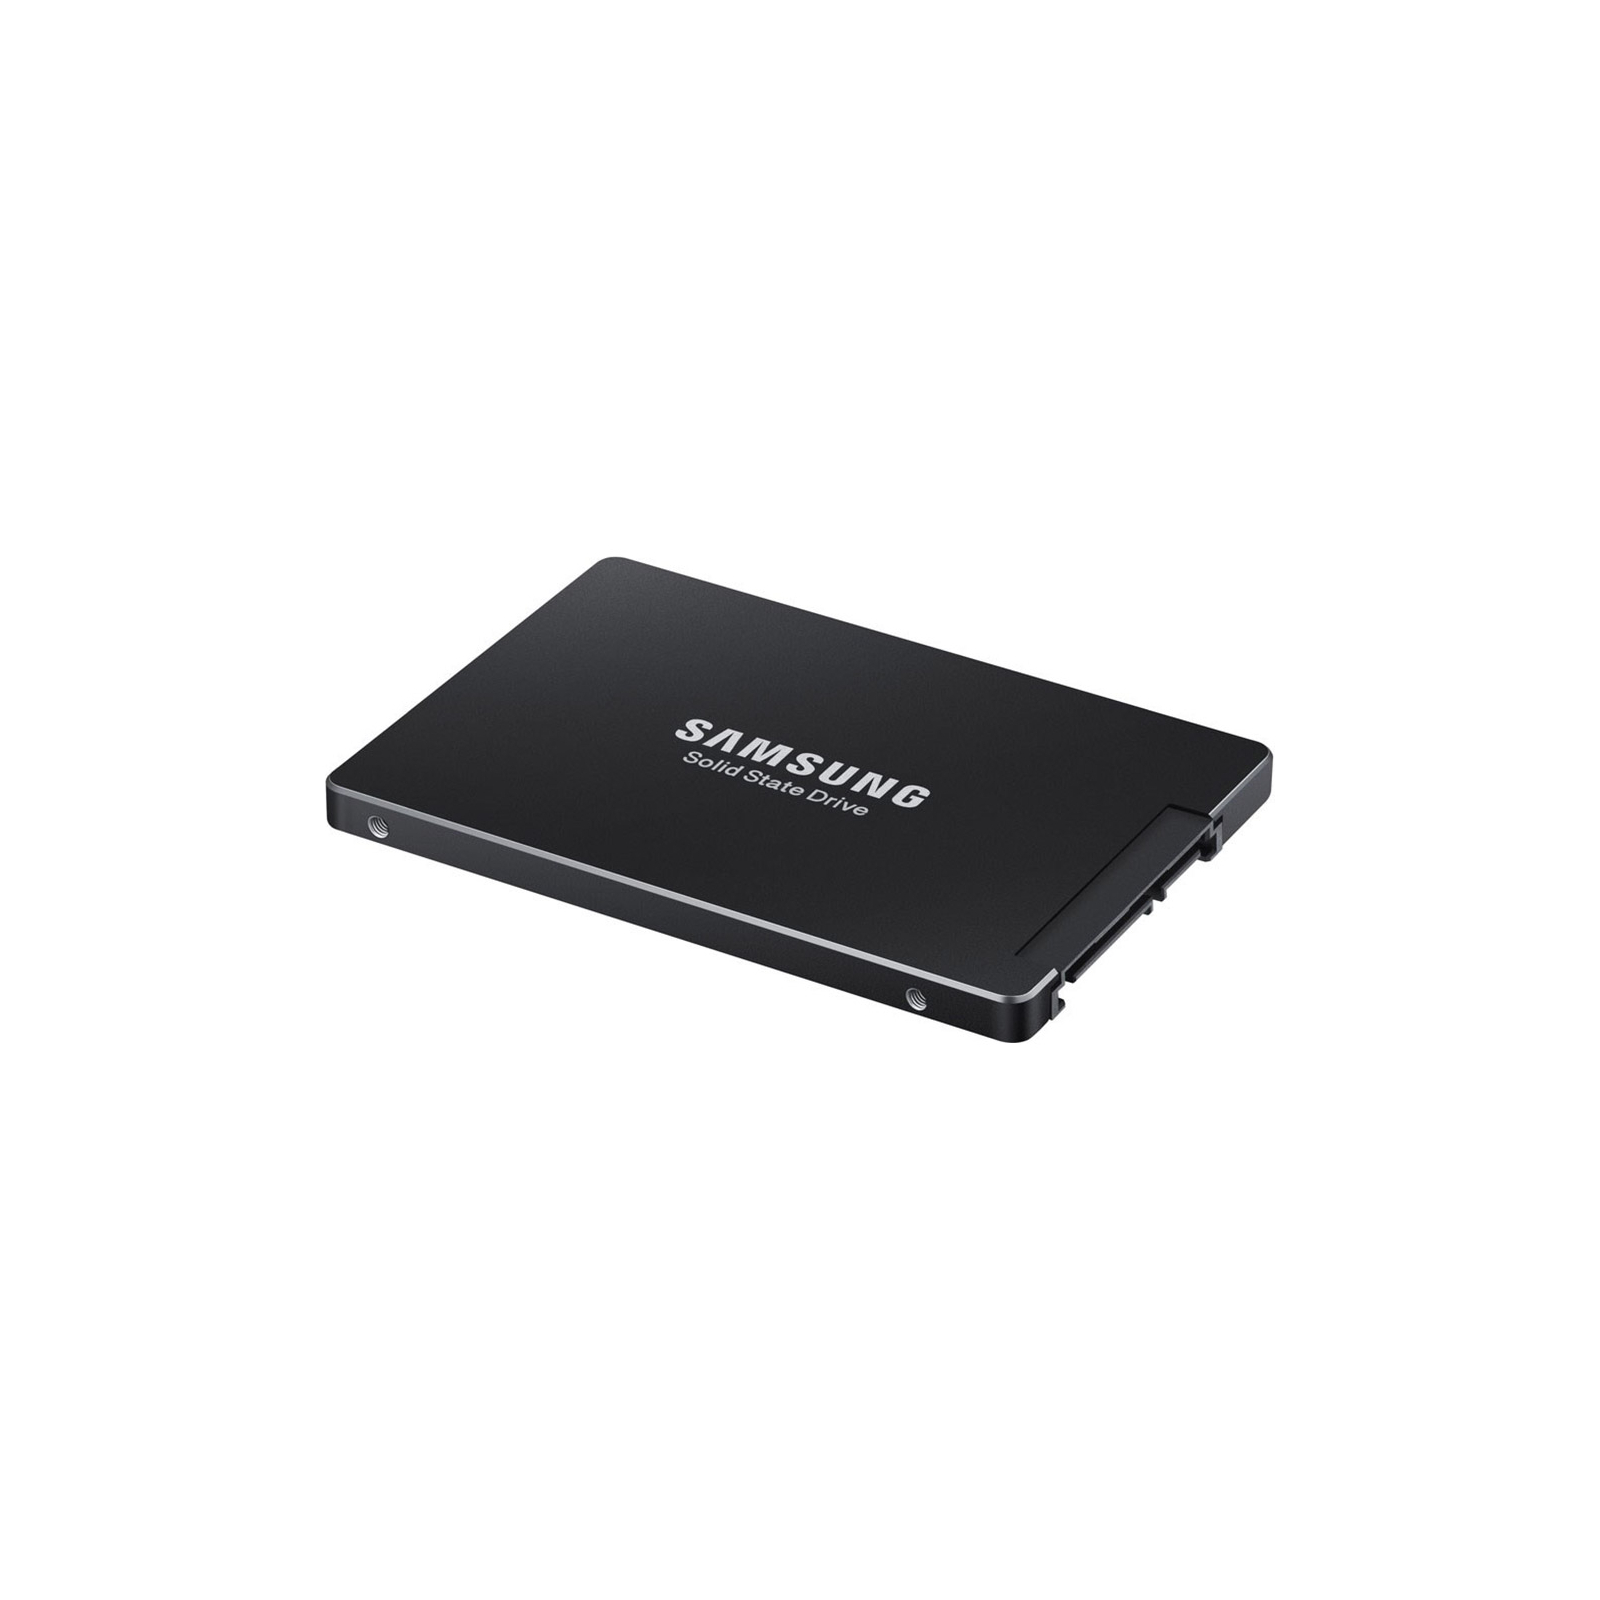 Накопитель SSD 2.5" 960GB Samsung (MZ7LH960HAJR-00005)